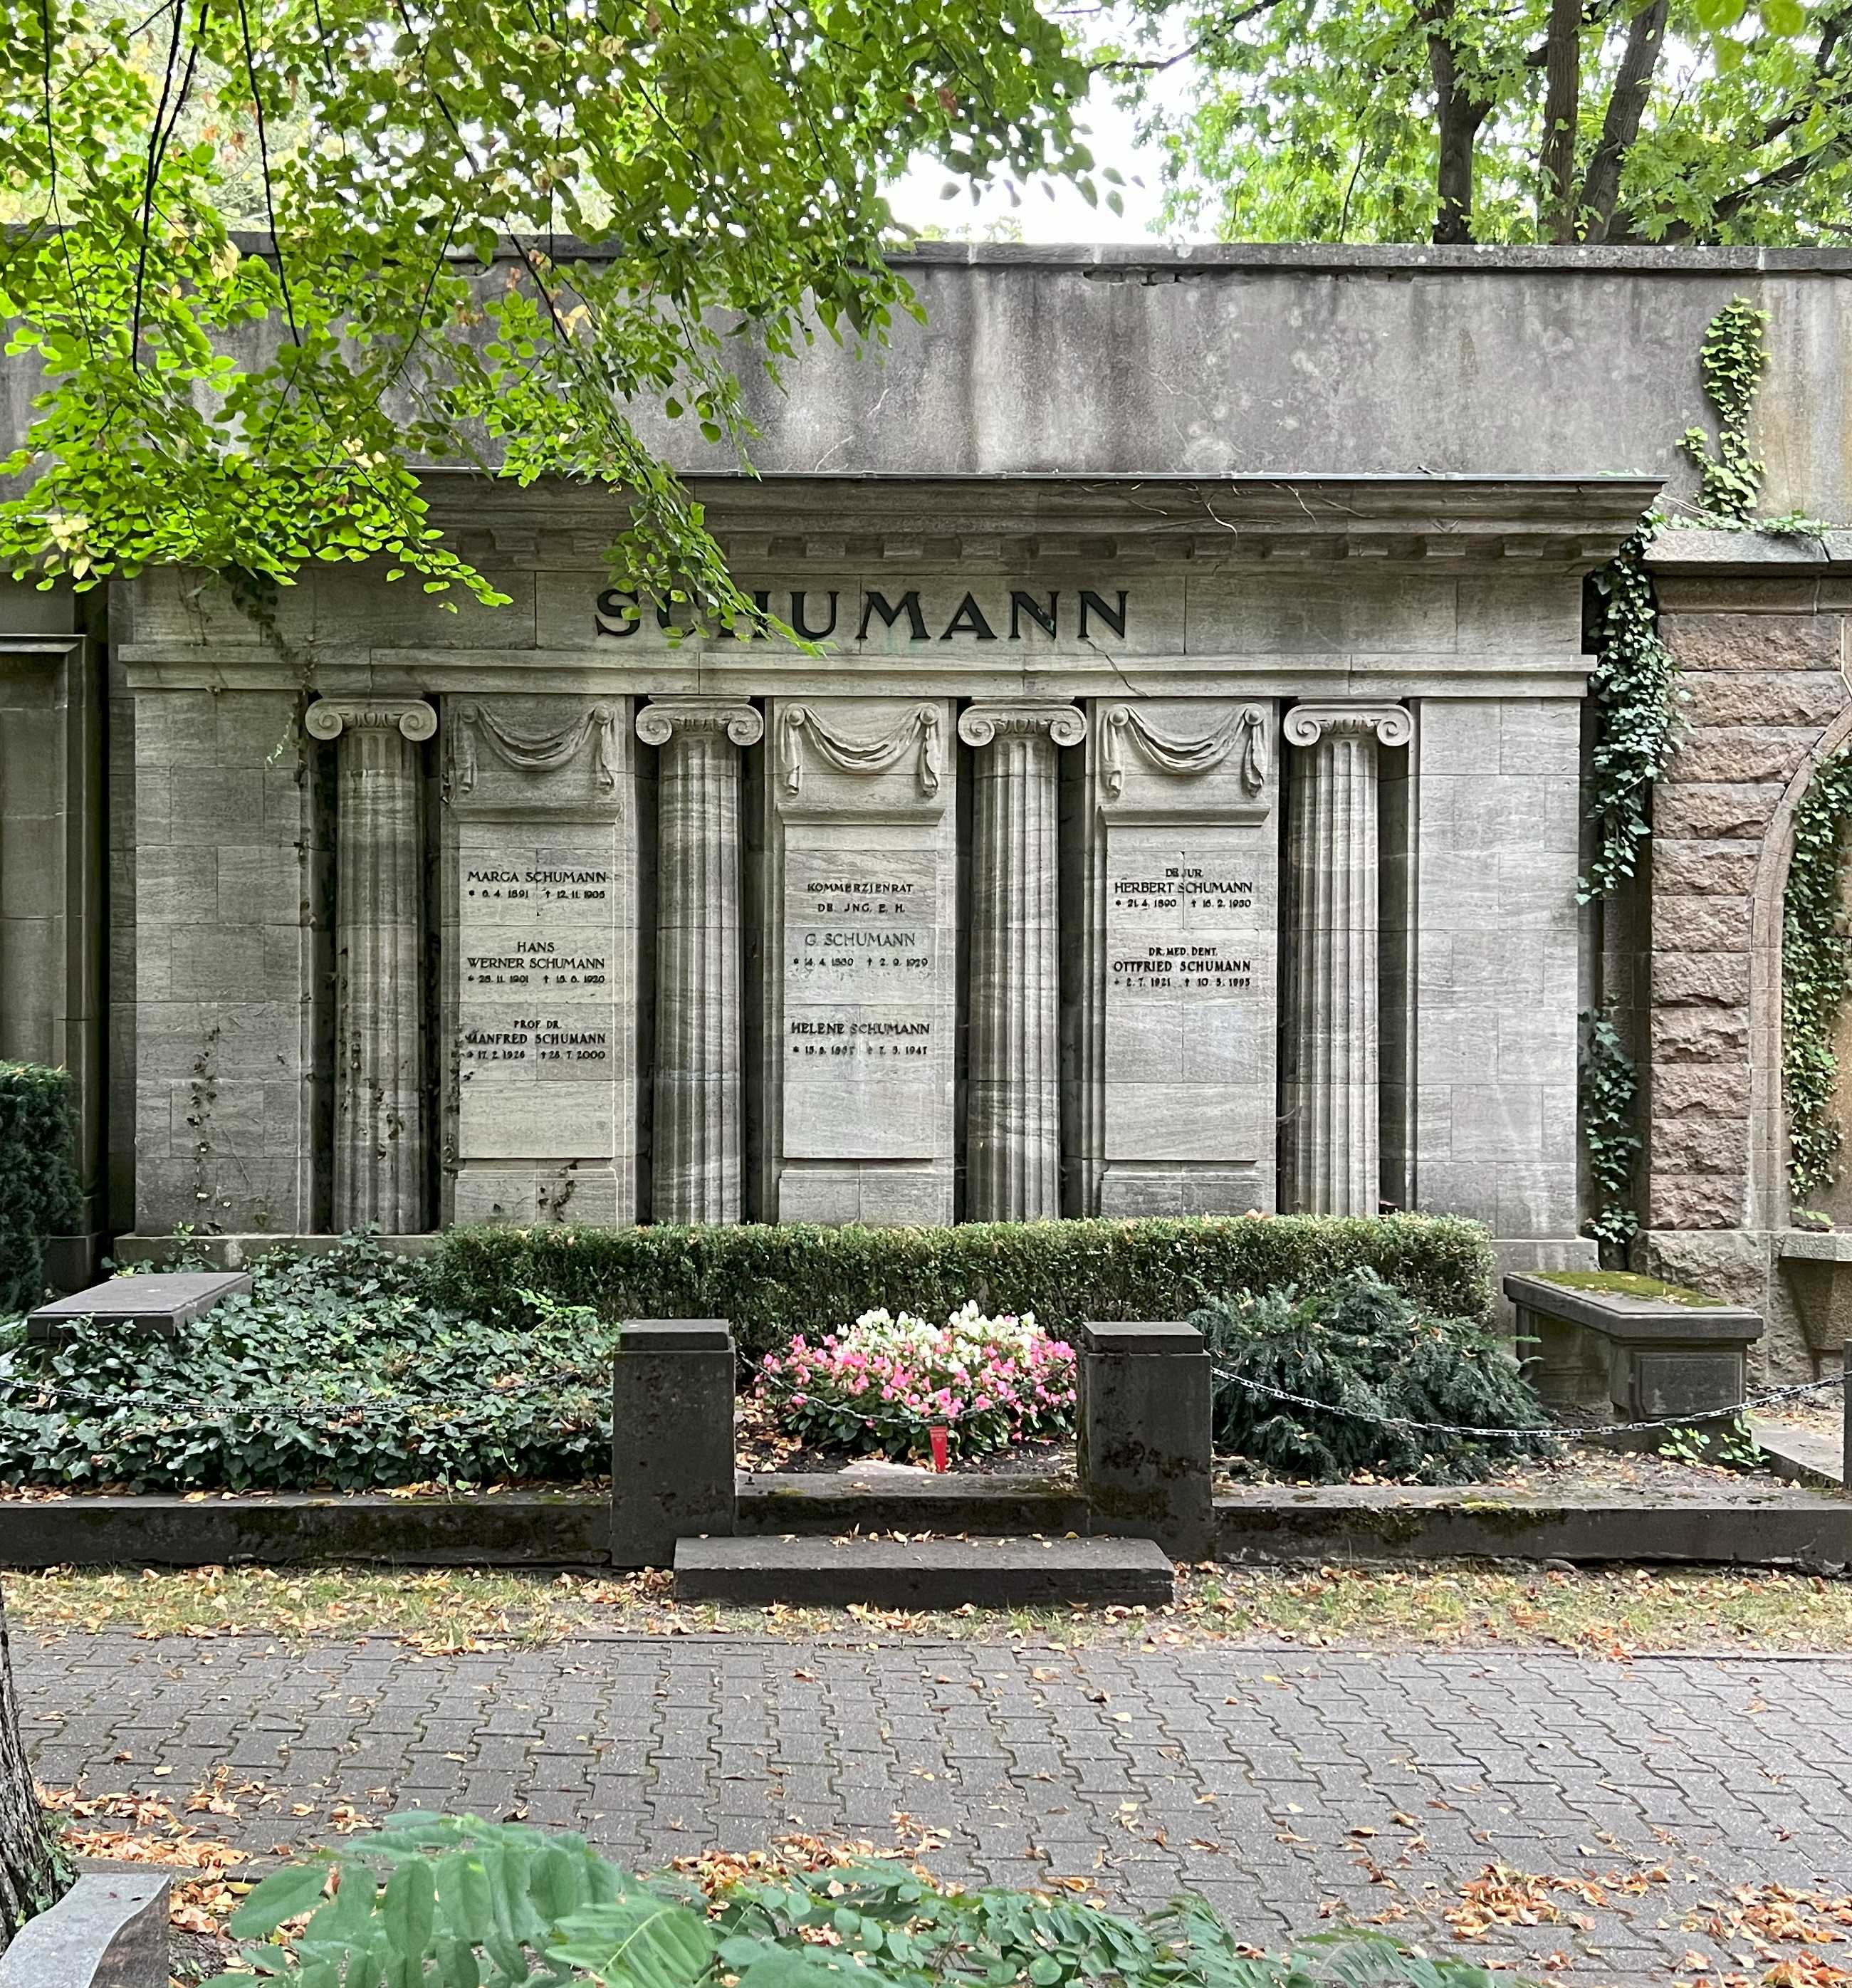 Grabstein Ottfried Schumann, Friedhof Wilmersdorf, Berlin